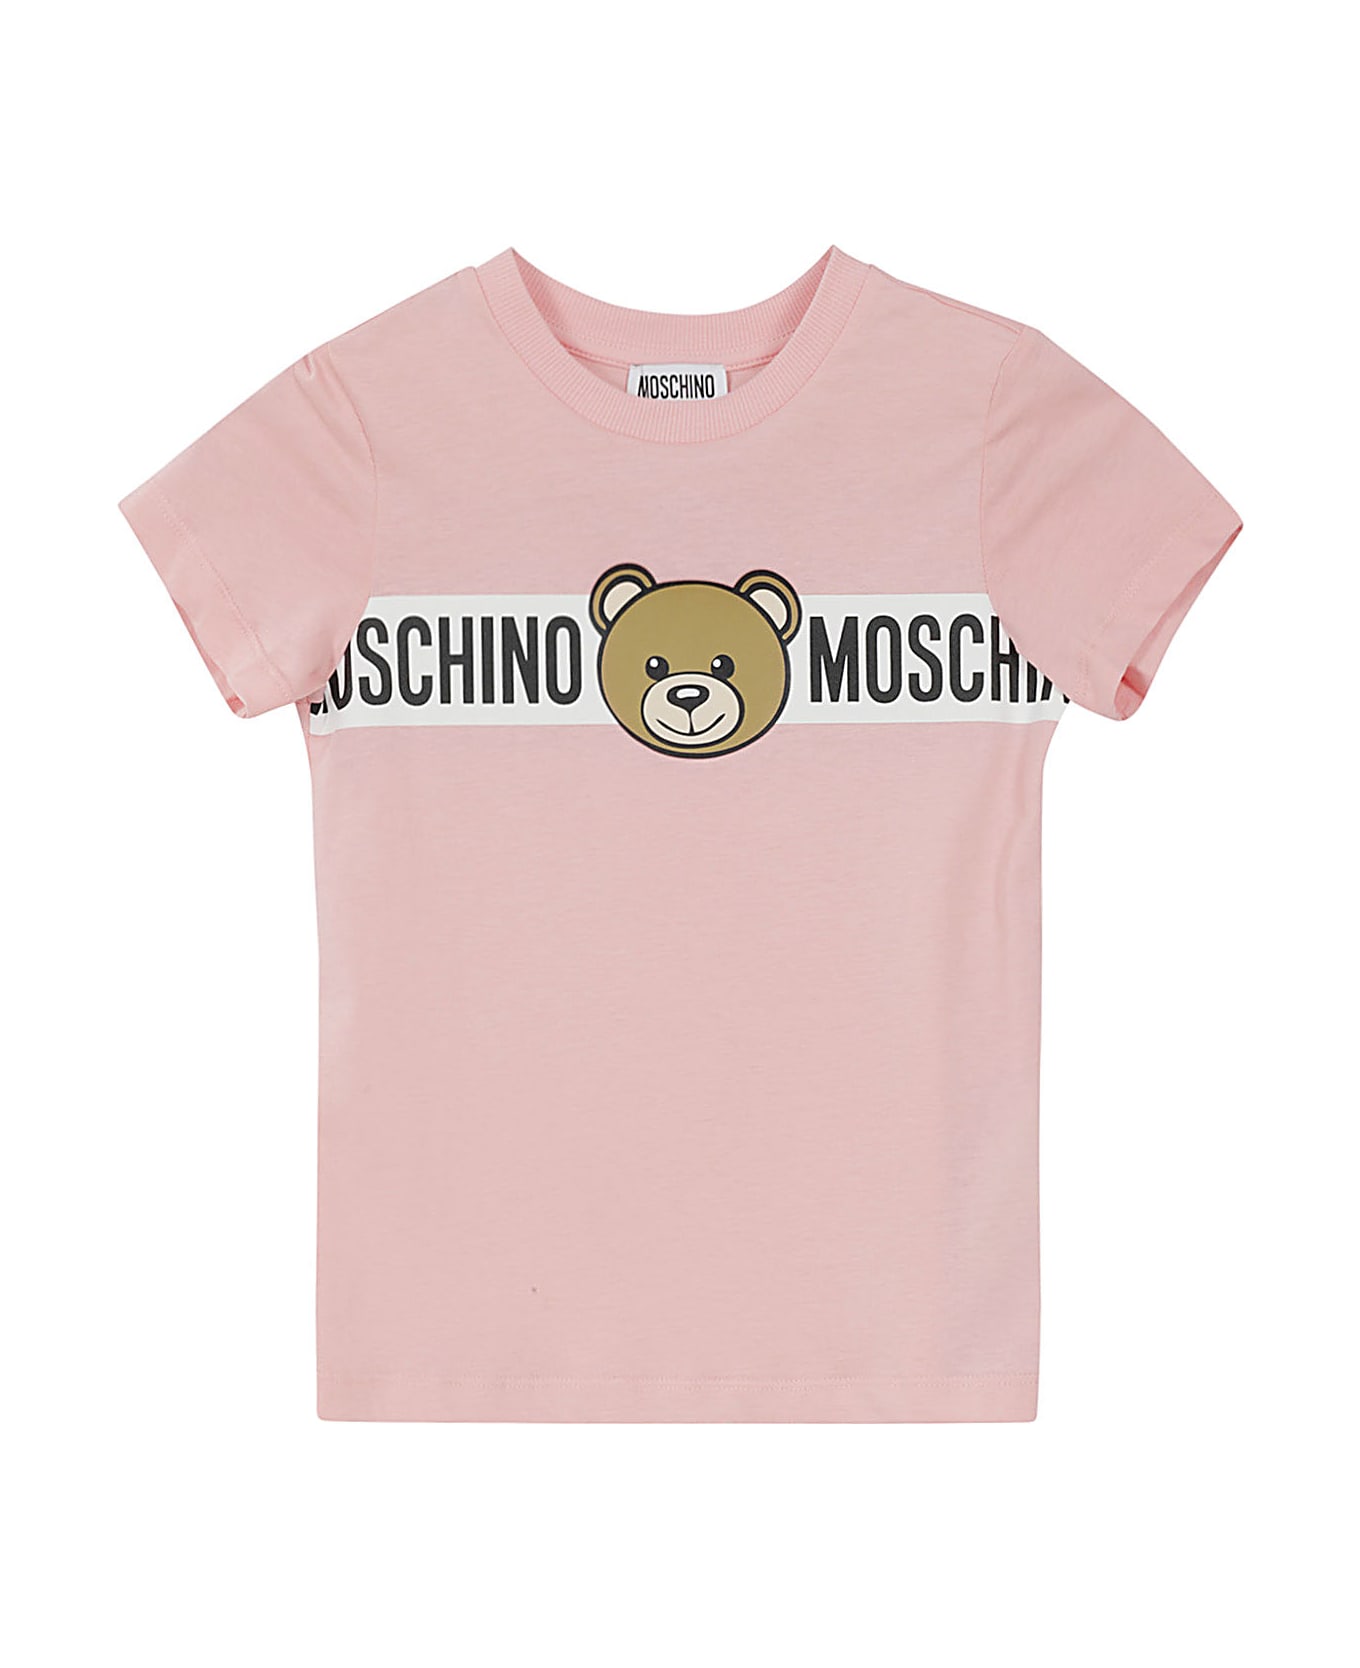 Moschino Tshirt - Sugar Rose